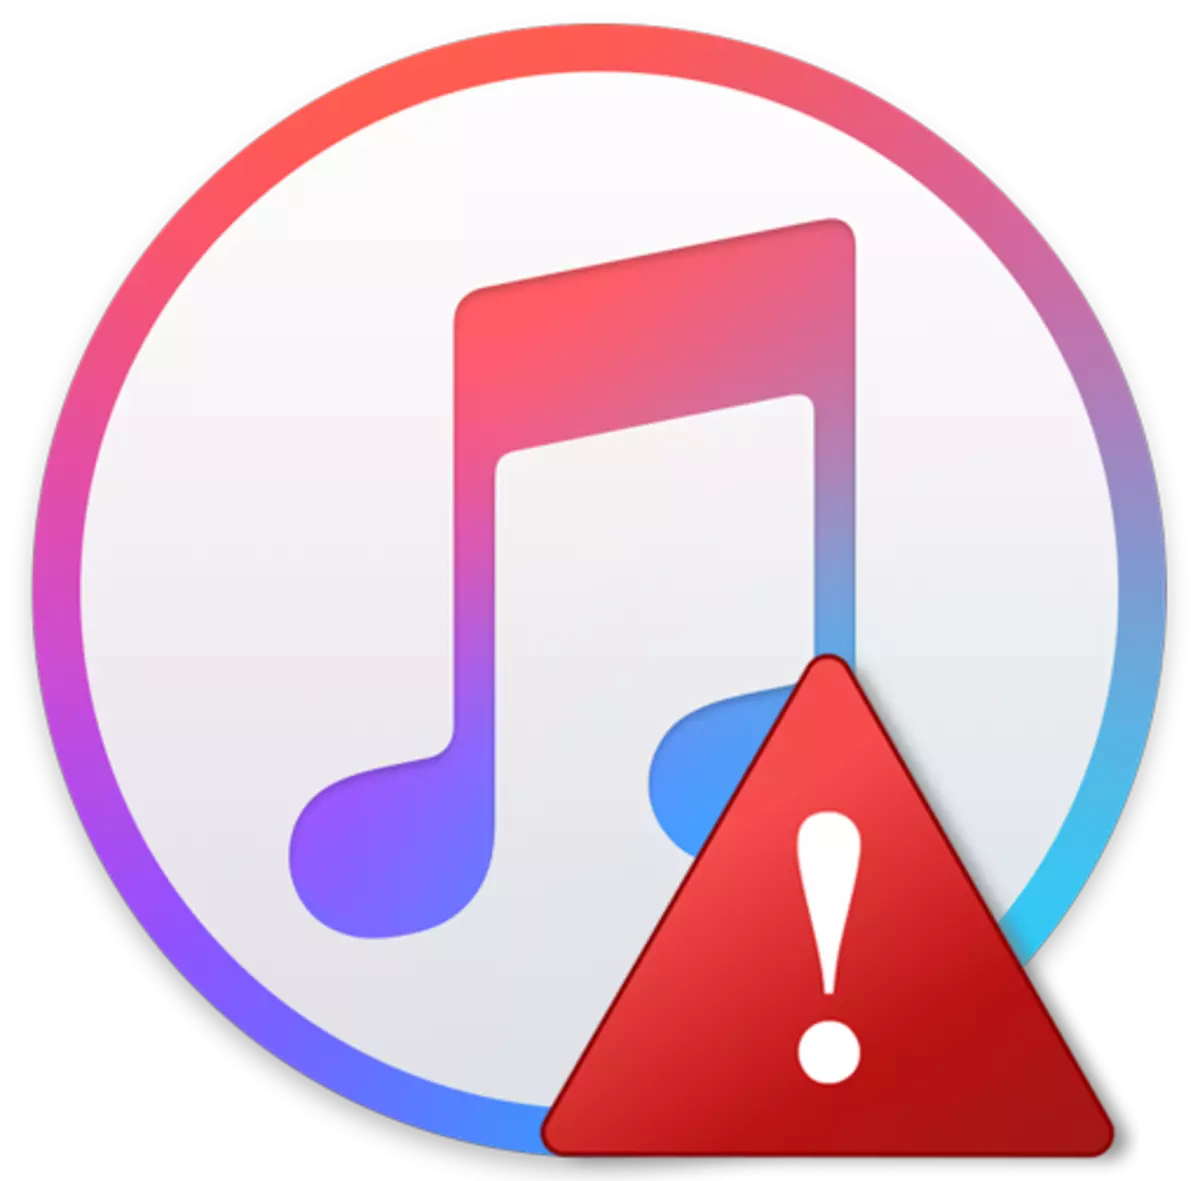 安裝程序在配置iTunes之前檢測到錯誤